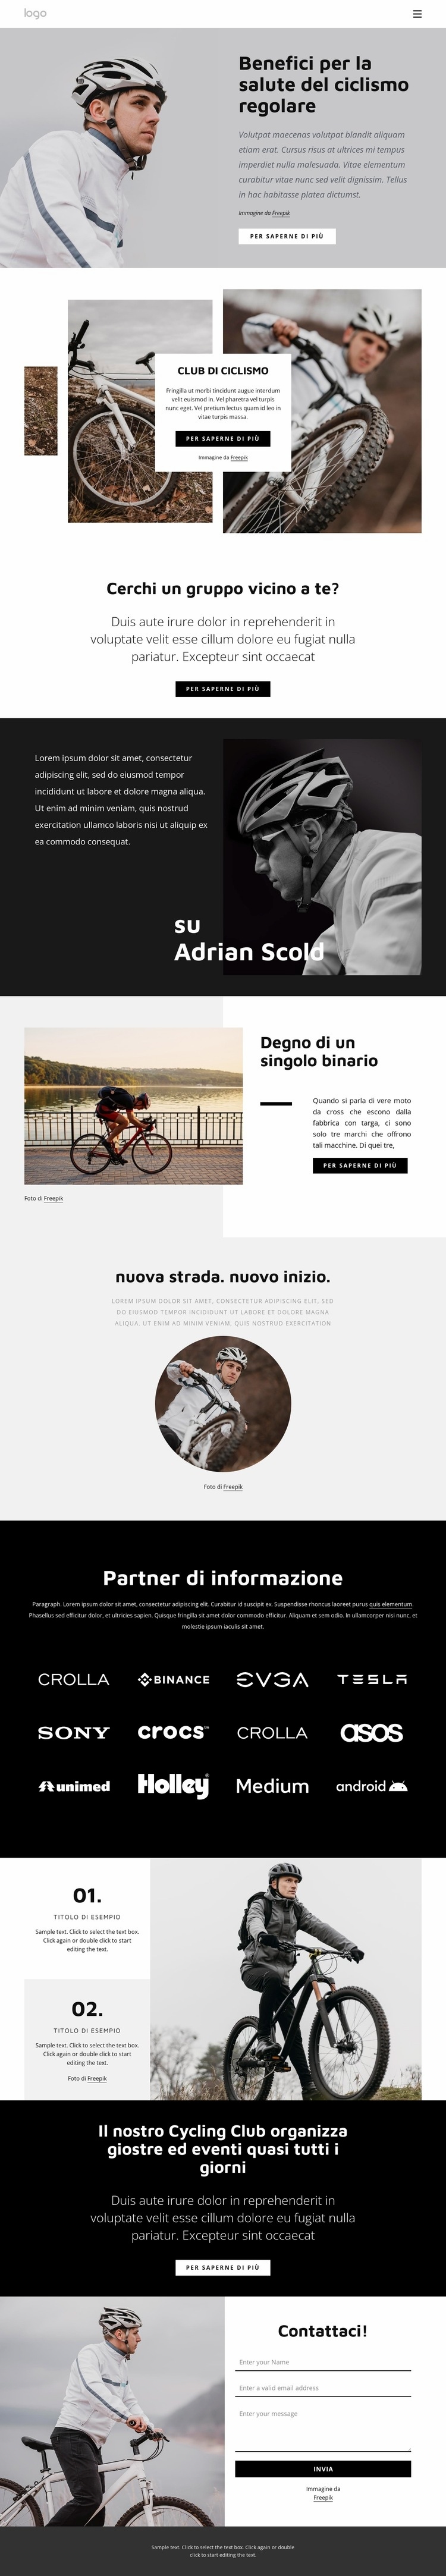 Vantaggi del ciclismo regolare Mockup del sito web